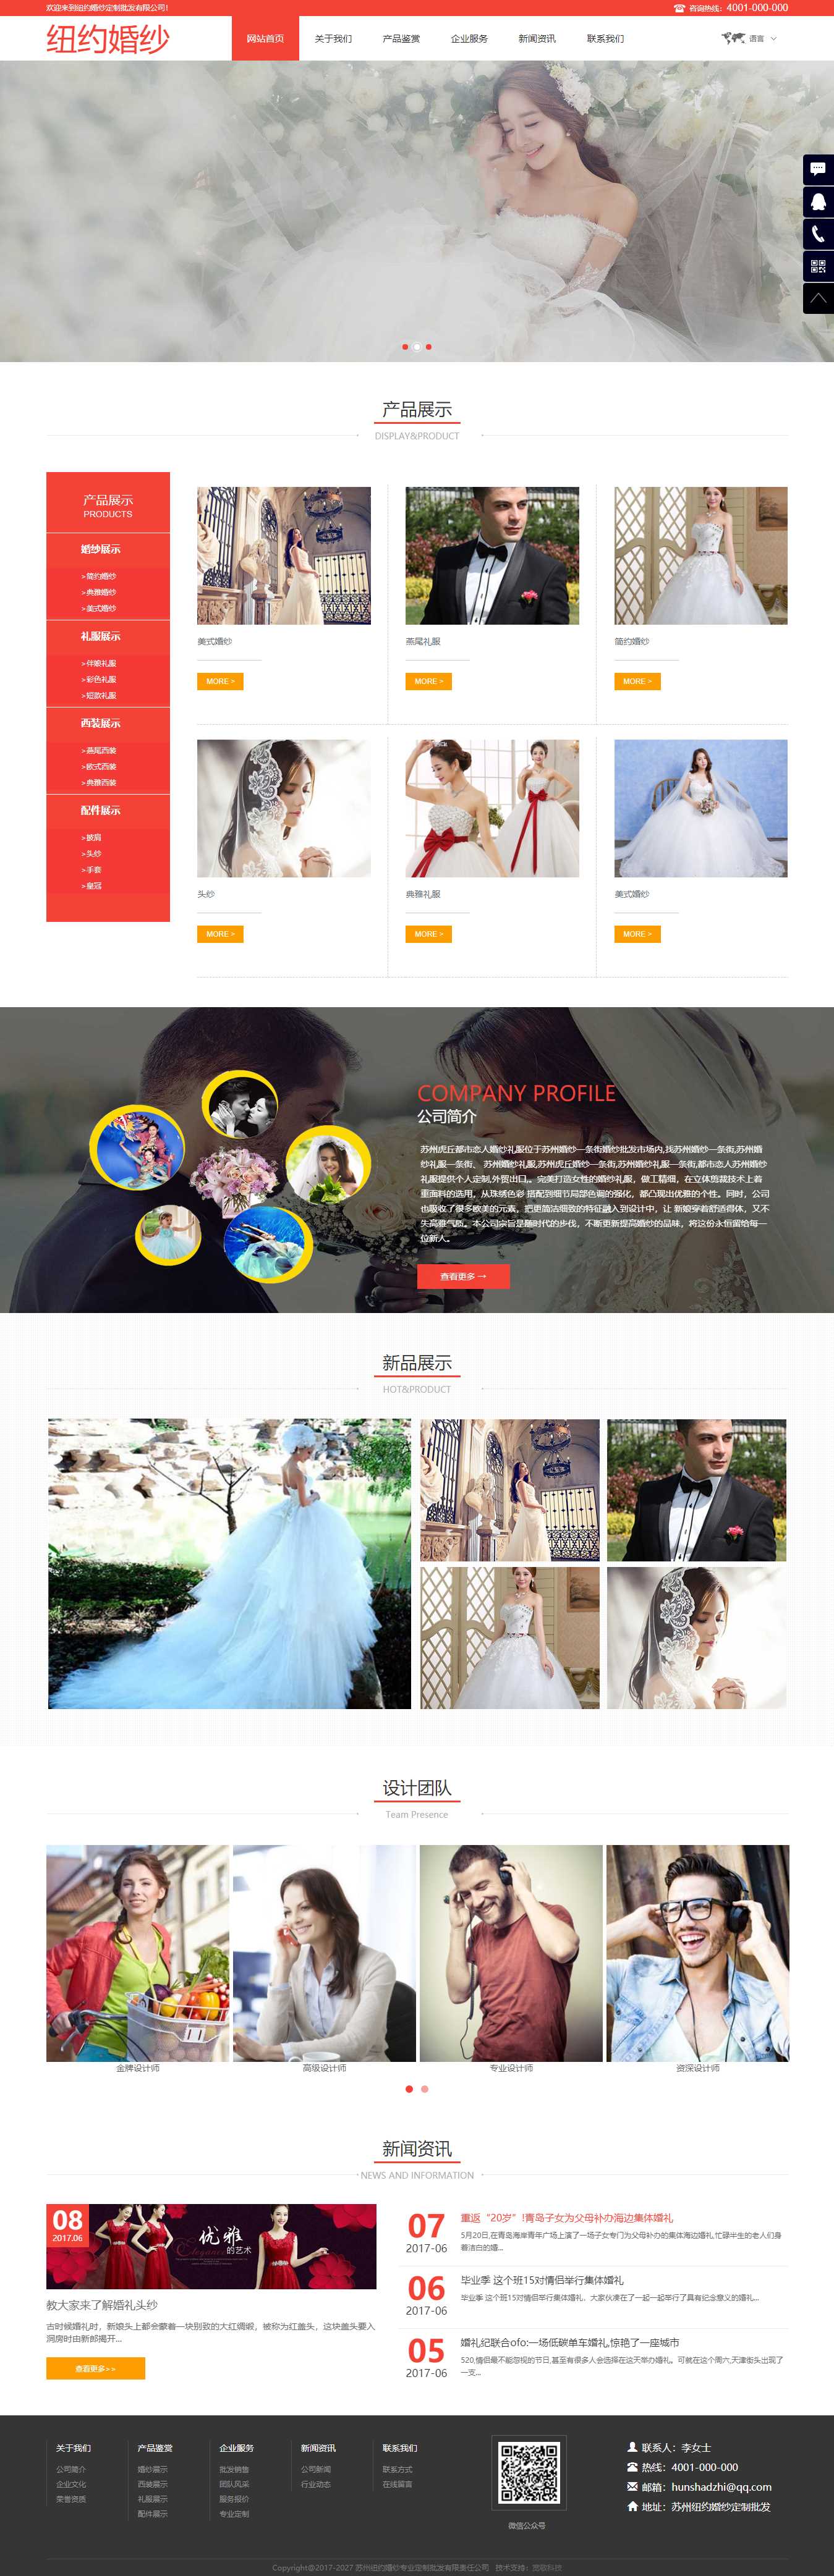 红色简洁风格的婚纱摄影公司企业网站源码下载